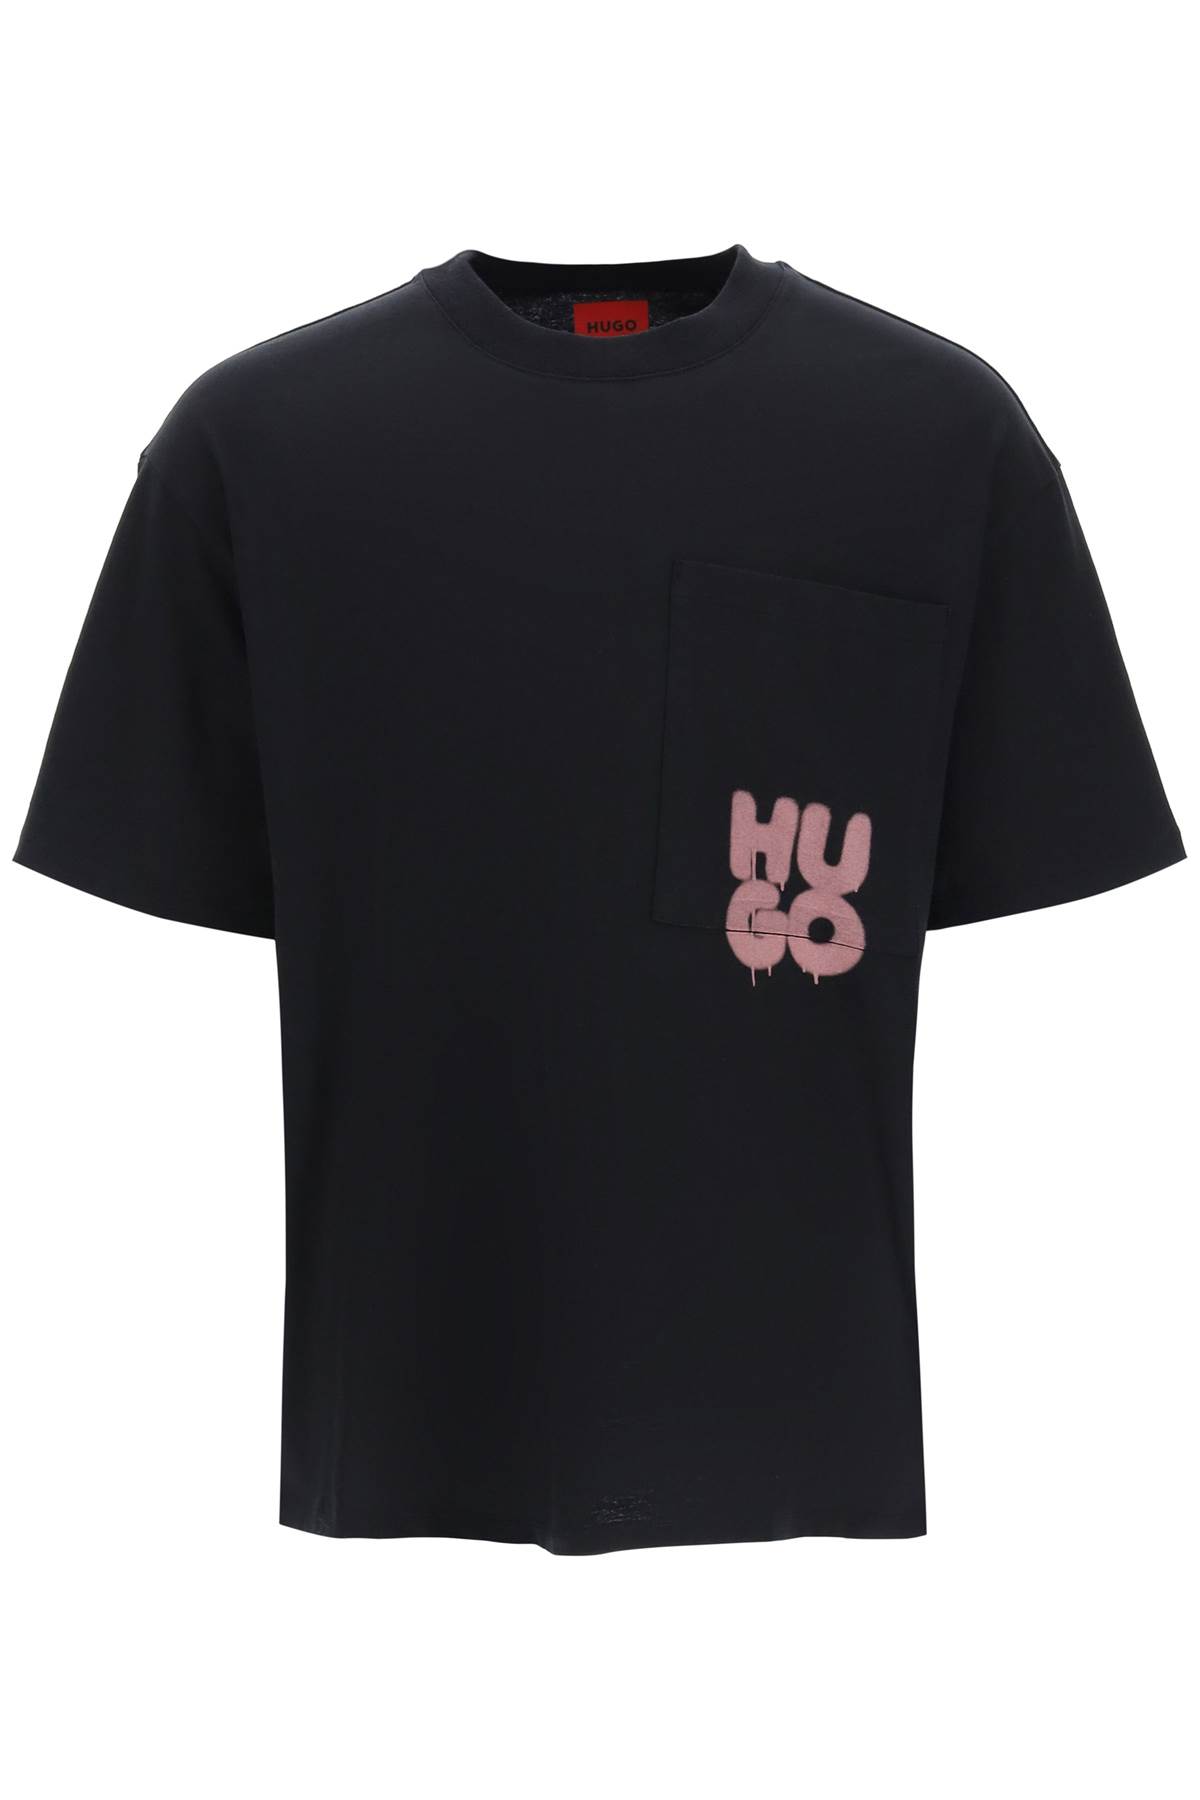 Hugo Boss Graffiti Logo Dampato T-shirt In Black (black) | ModeSens